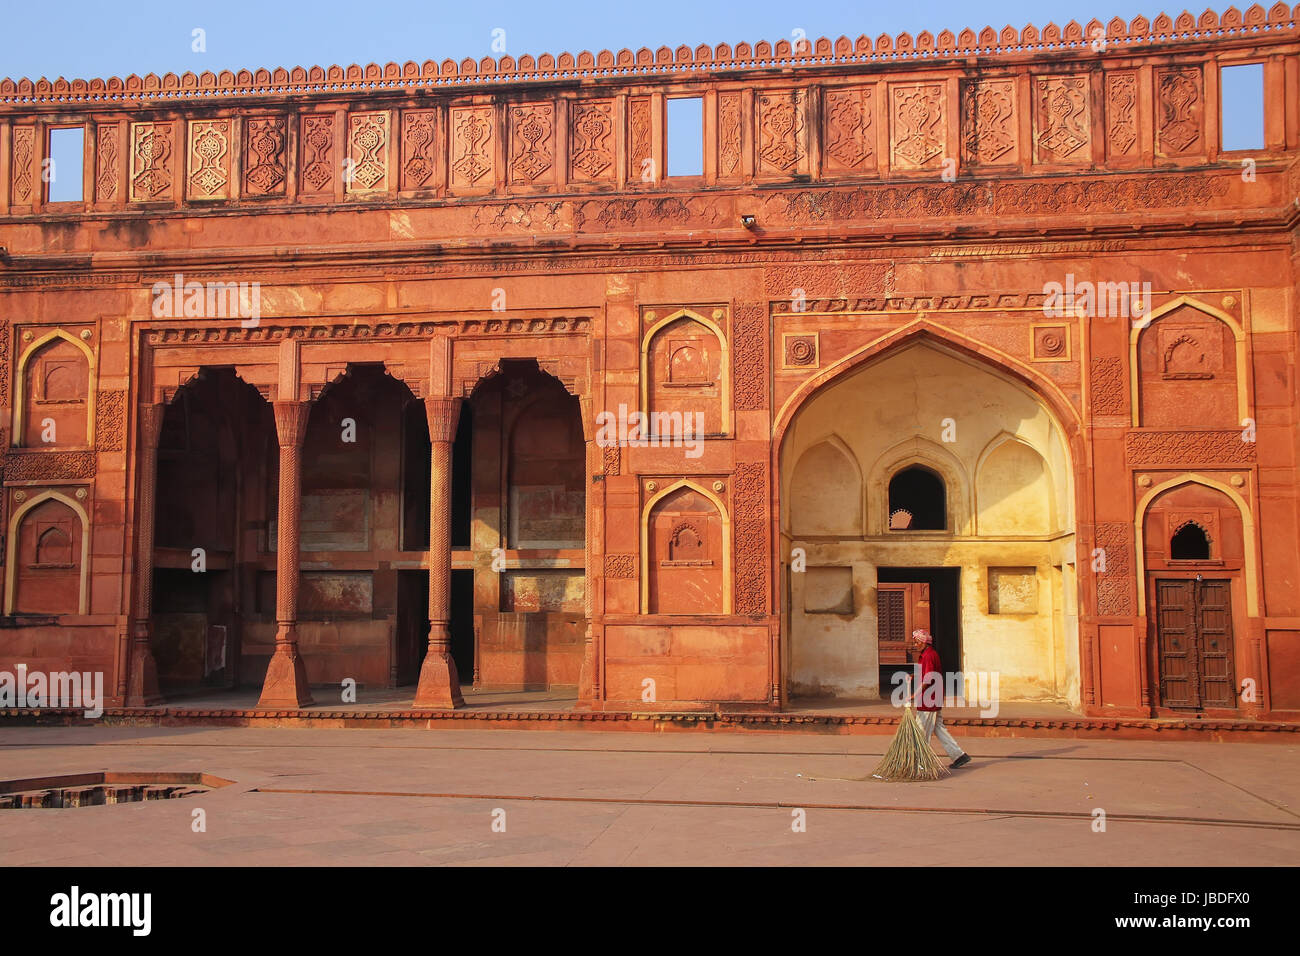 Lokale Arbeiter kehren Hof des Jahangiri Mahal in Agra Fort, Uttar Pradesh, Indien. Das Fort wurde in erster Linie als eine militärische Struktur gebaut, aber wurde l Stockfoto